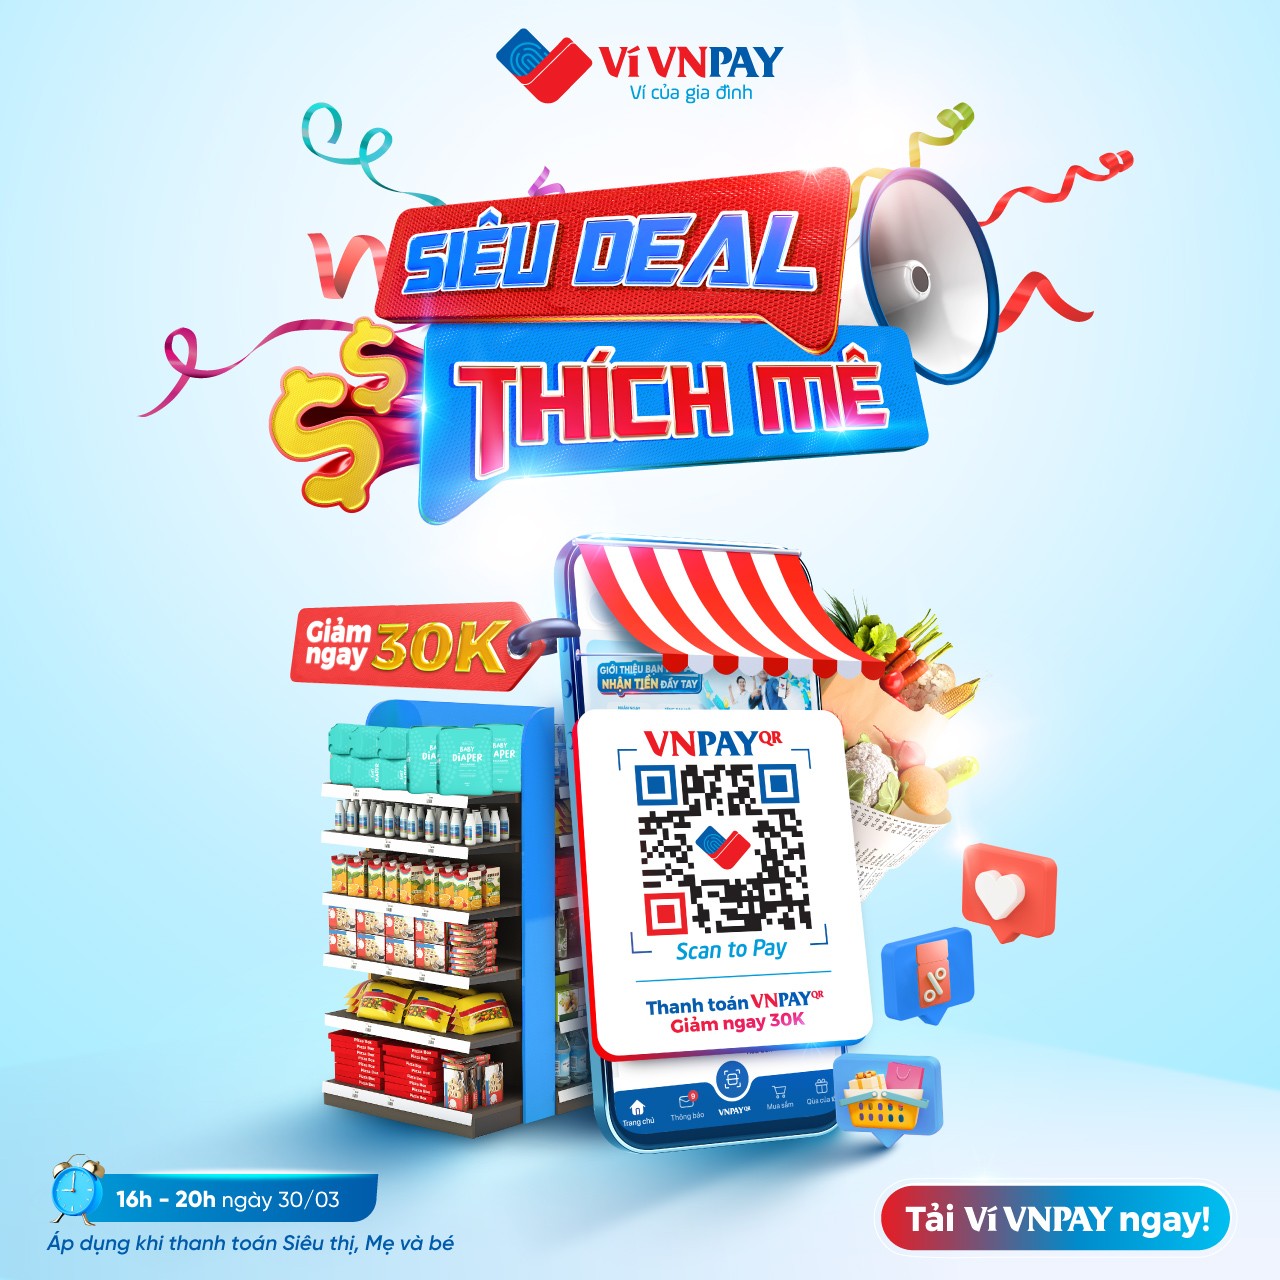 Mã VIVNPAY30K - Giảm 30.000 đồng khi thanh toán VNPAY-QR tại các chuỗi siêu thị, cửa hàng lớn